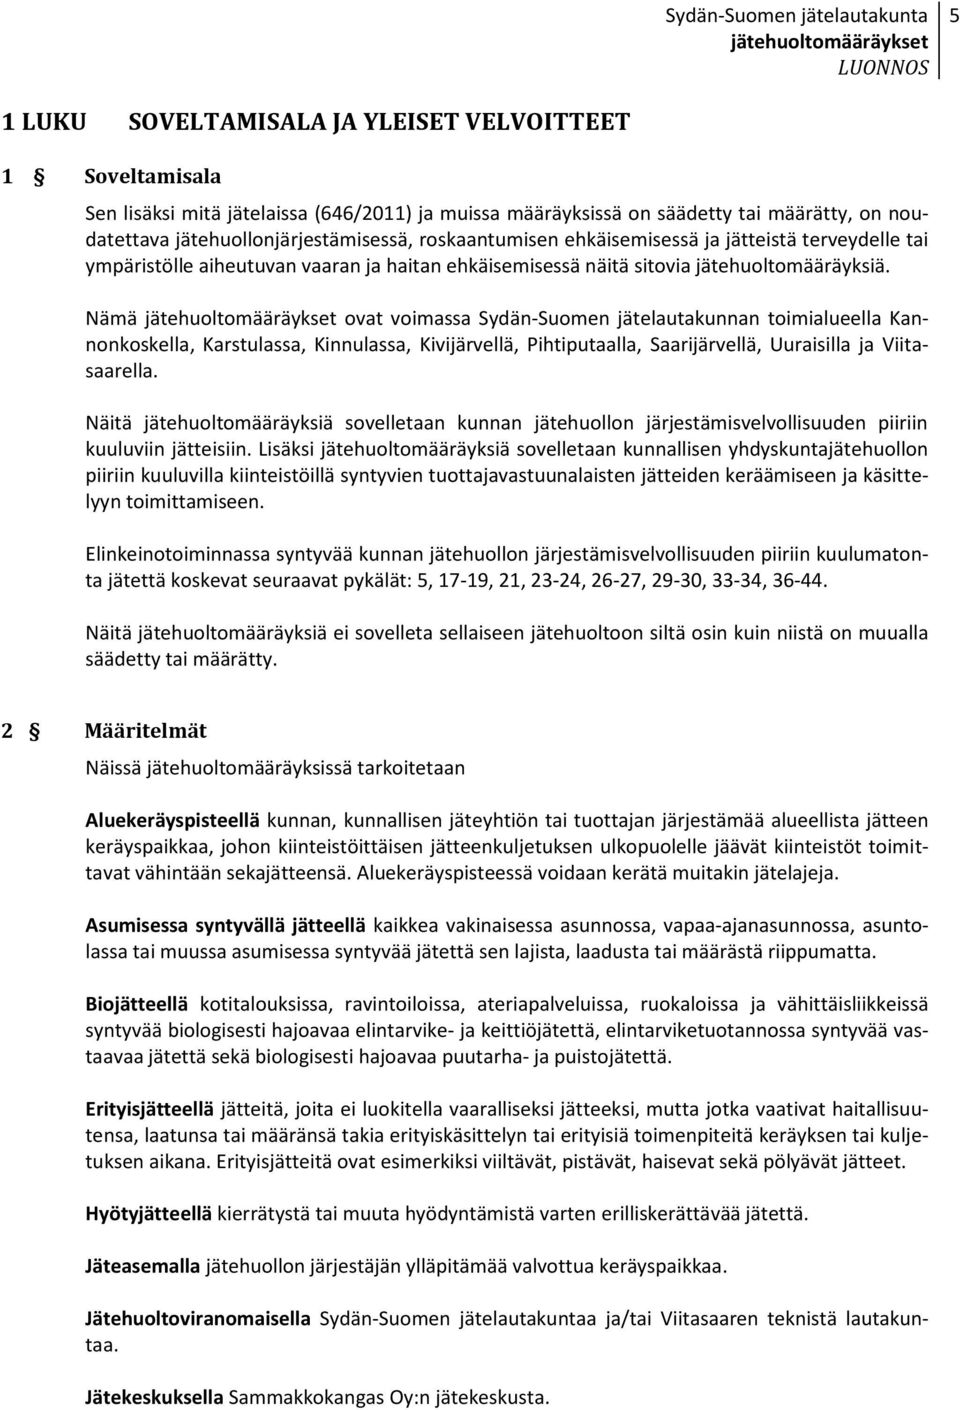 Nämä ovat voimassa Sydän-Suomen jätelautakunnan toimialueella Kannonkoskella, Karstulassa, Kinnulassa, Kivijärvellä, Pihtiputaalla, Saarijärvellä, Uuraisilla ja Viitasaarella.